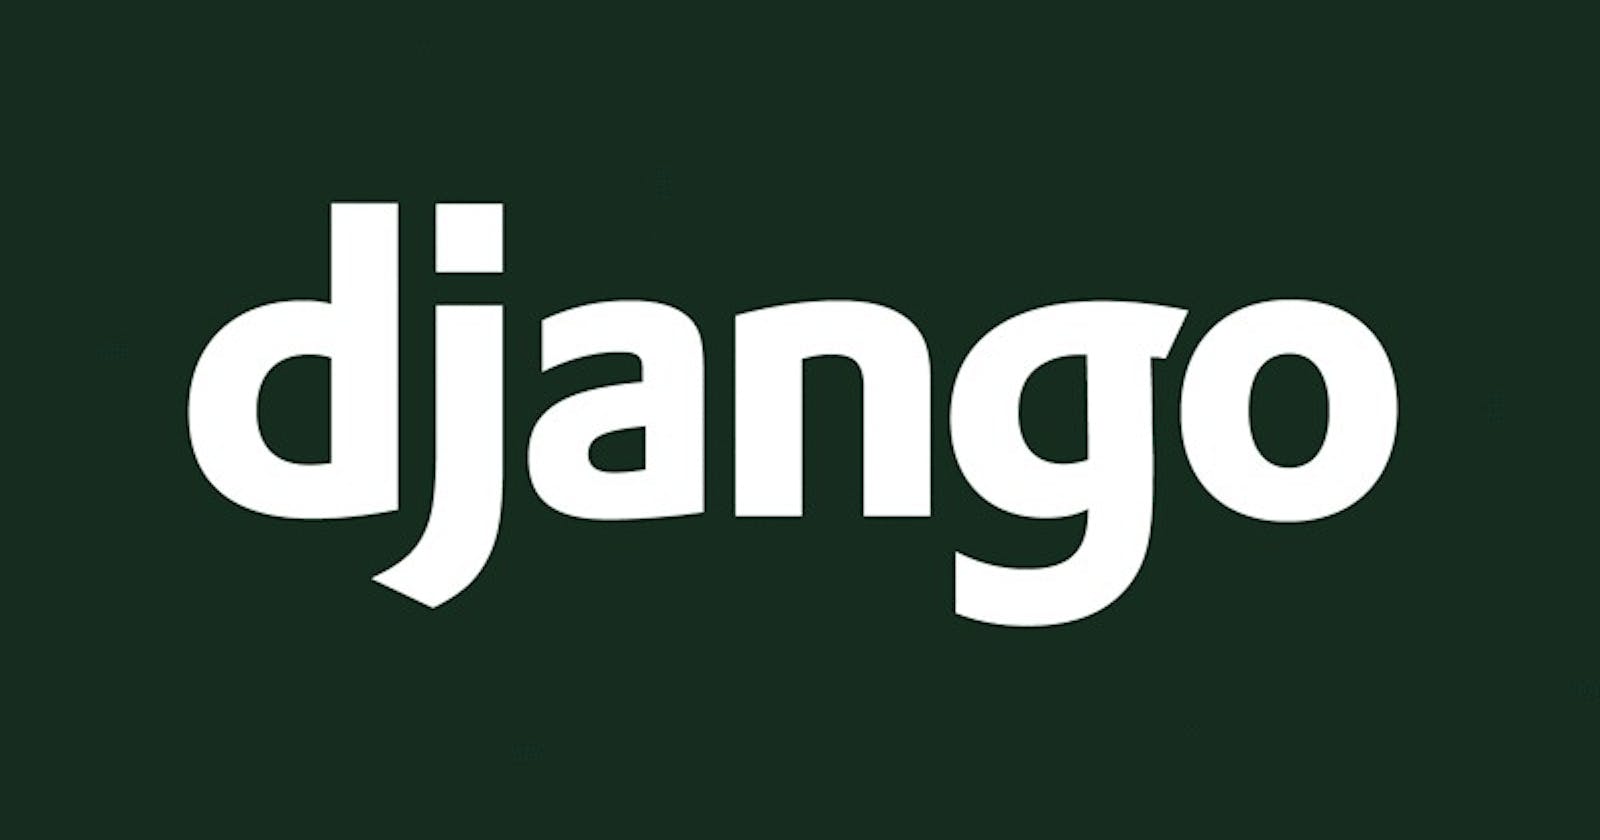 Django at a glance 😋